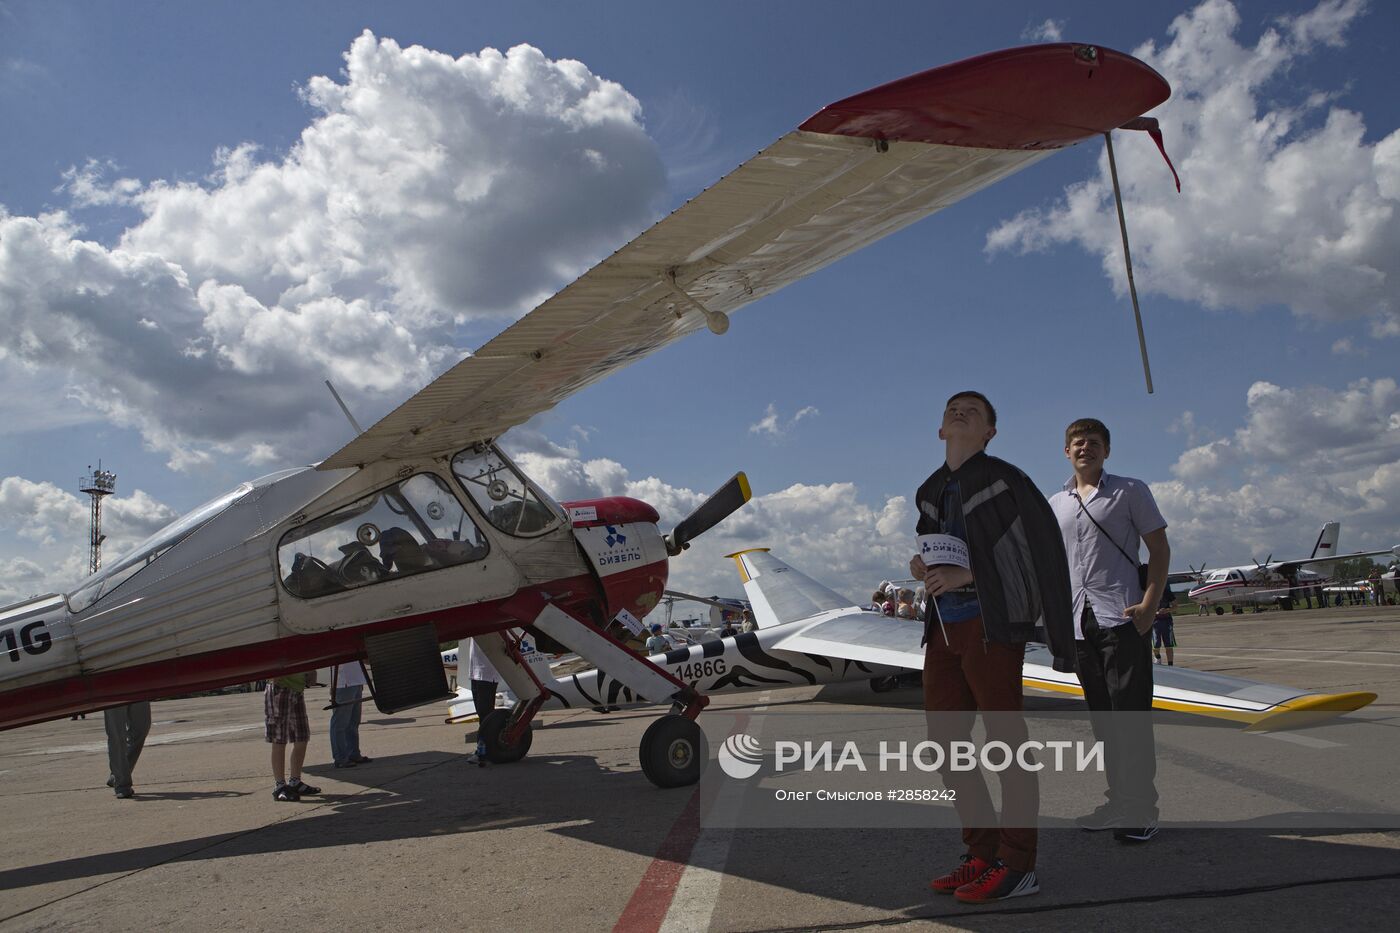 Авиасалон малой и региональной авиации "Авиарегион-2016" в Ярославской области